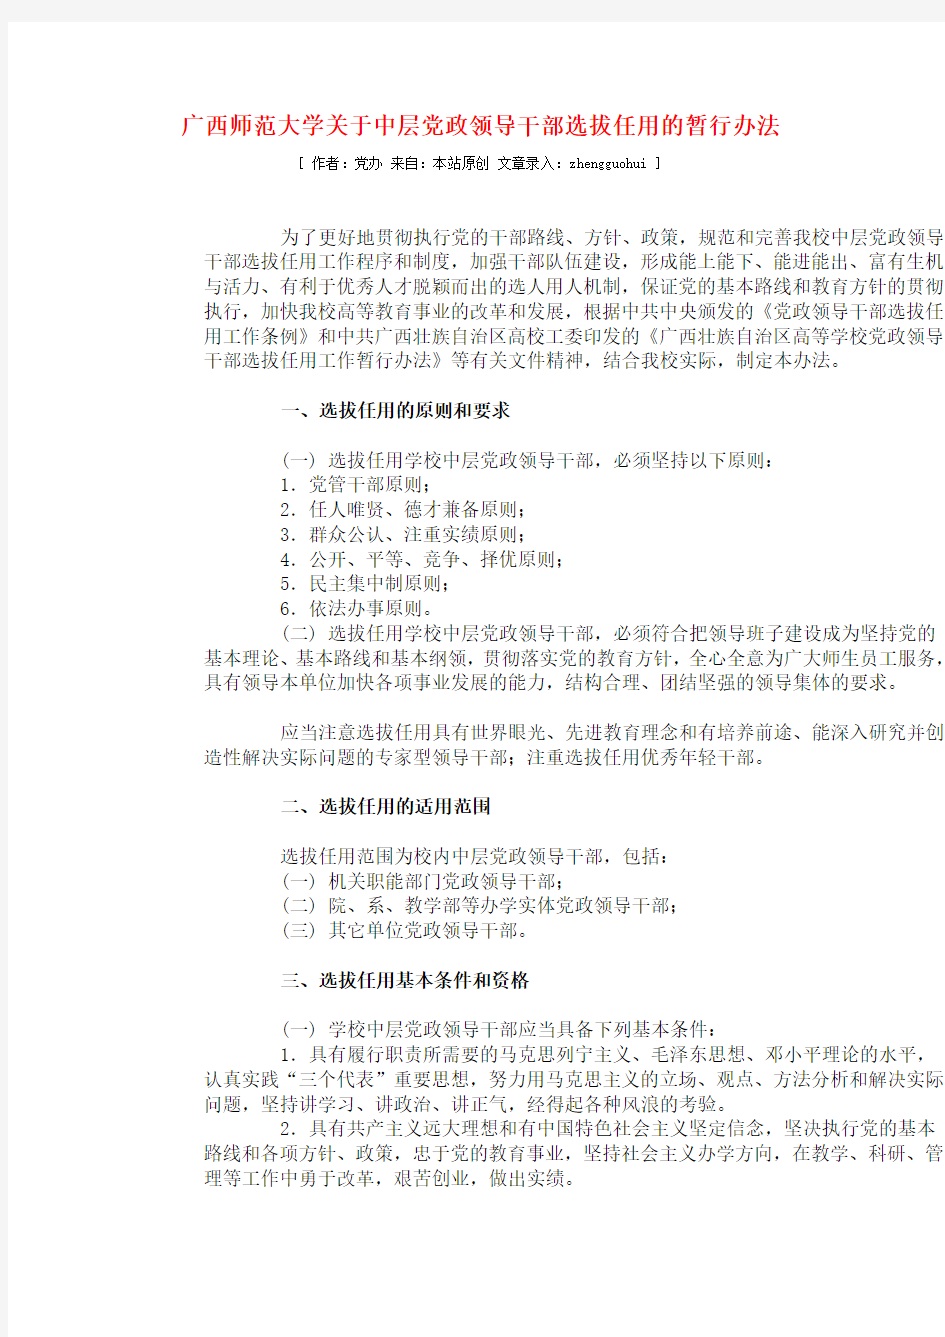 广西师范大学关于中层党政领导干部选拔任用的暂行办法